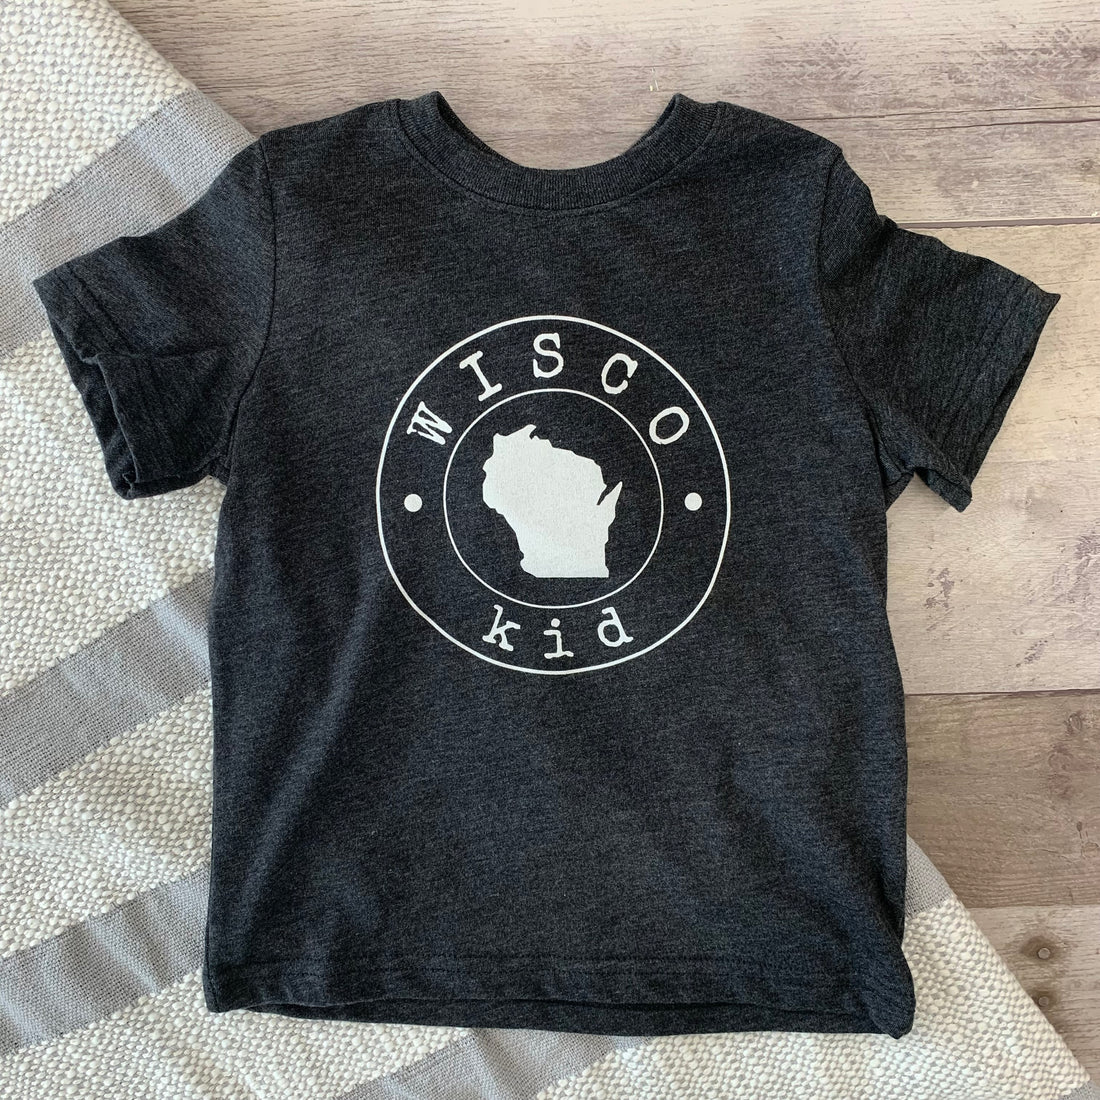 Wisco Kid Shirt